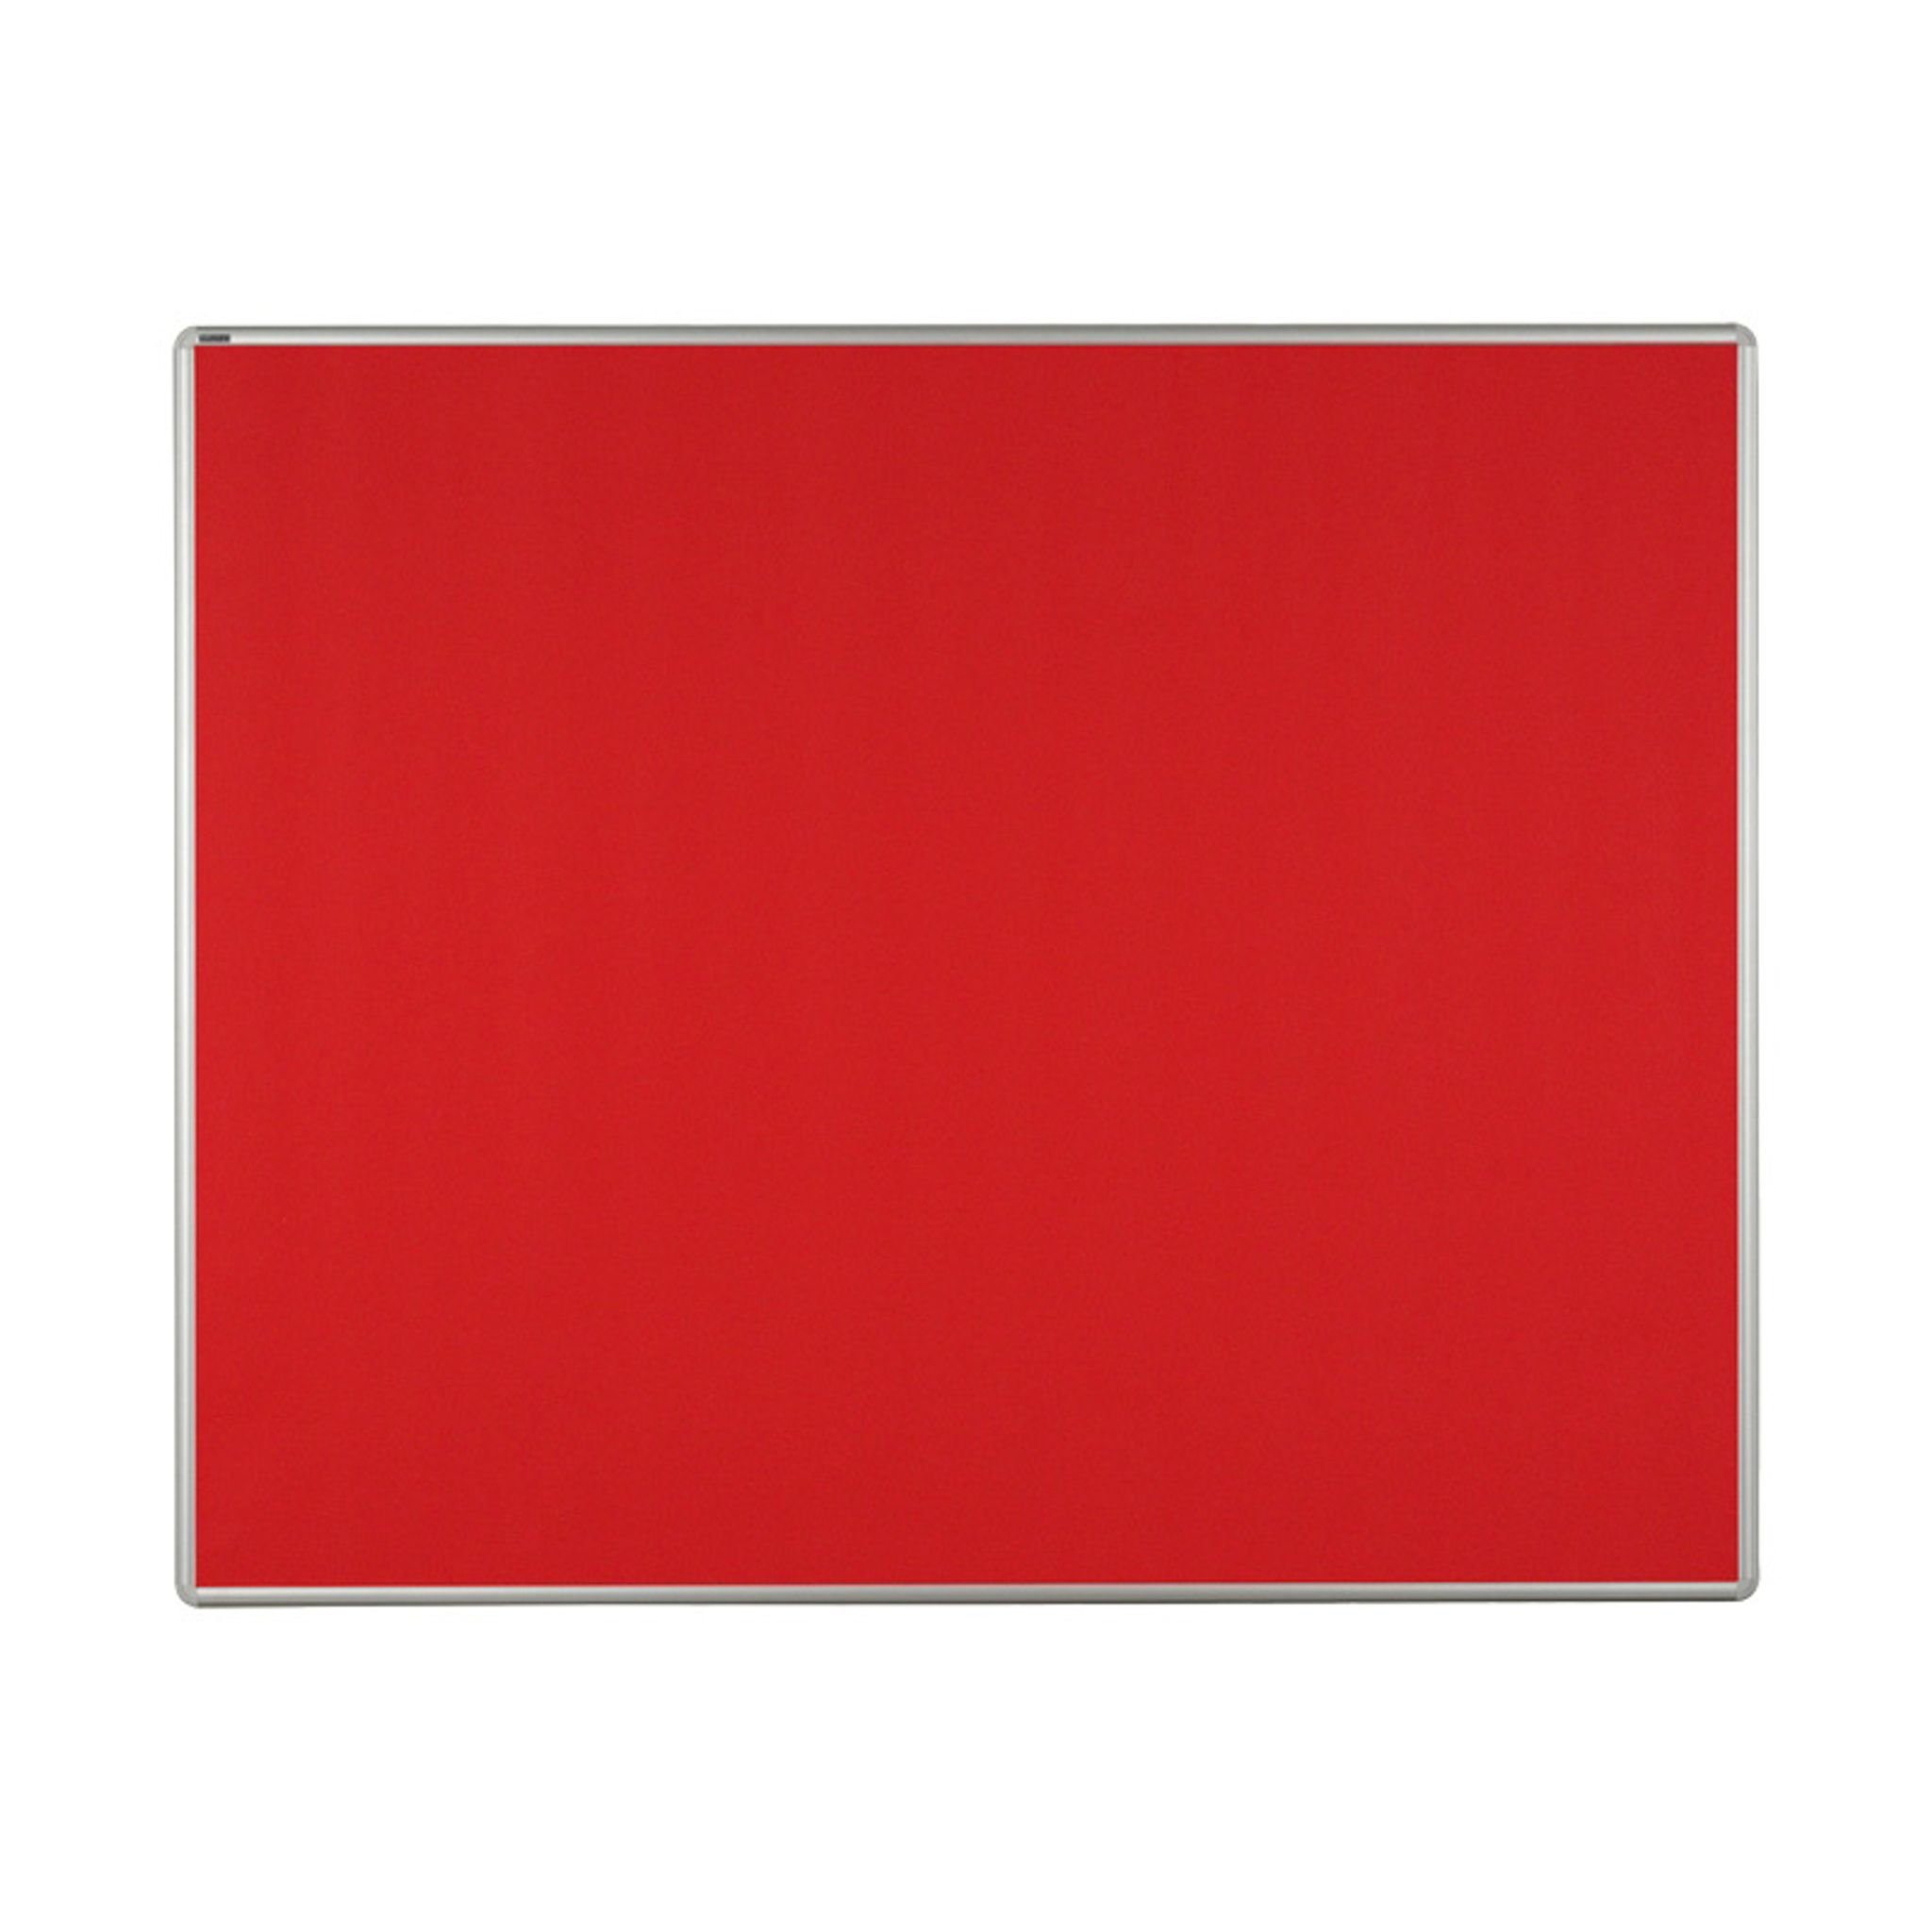 Textilná nástenka ekoTAB v hliníkovom ráme, 1500 x 1200 mm, červená